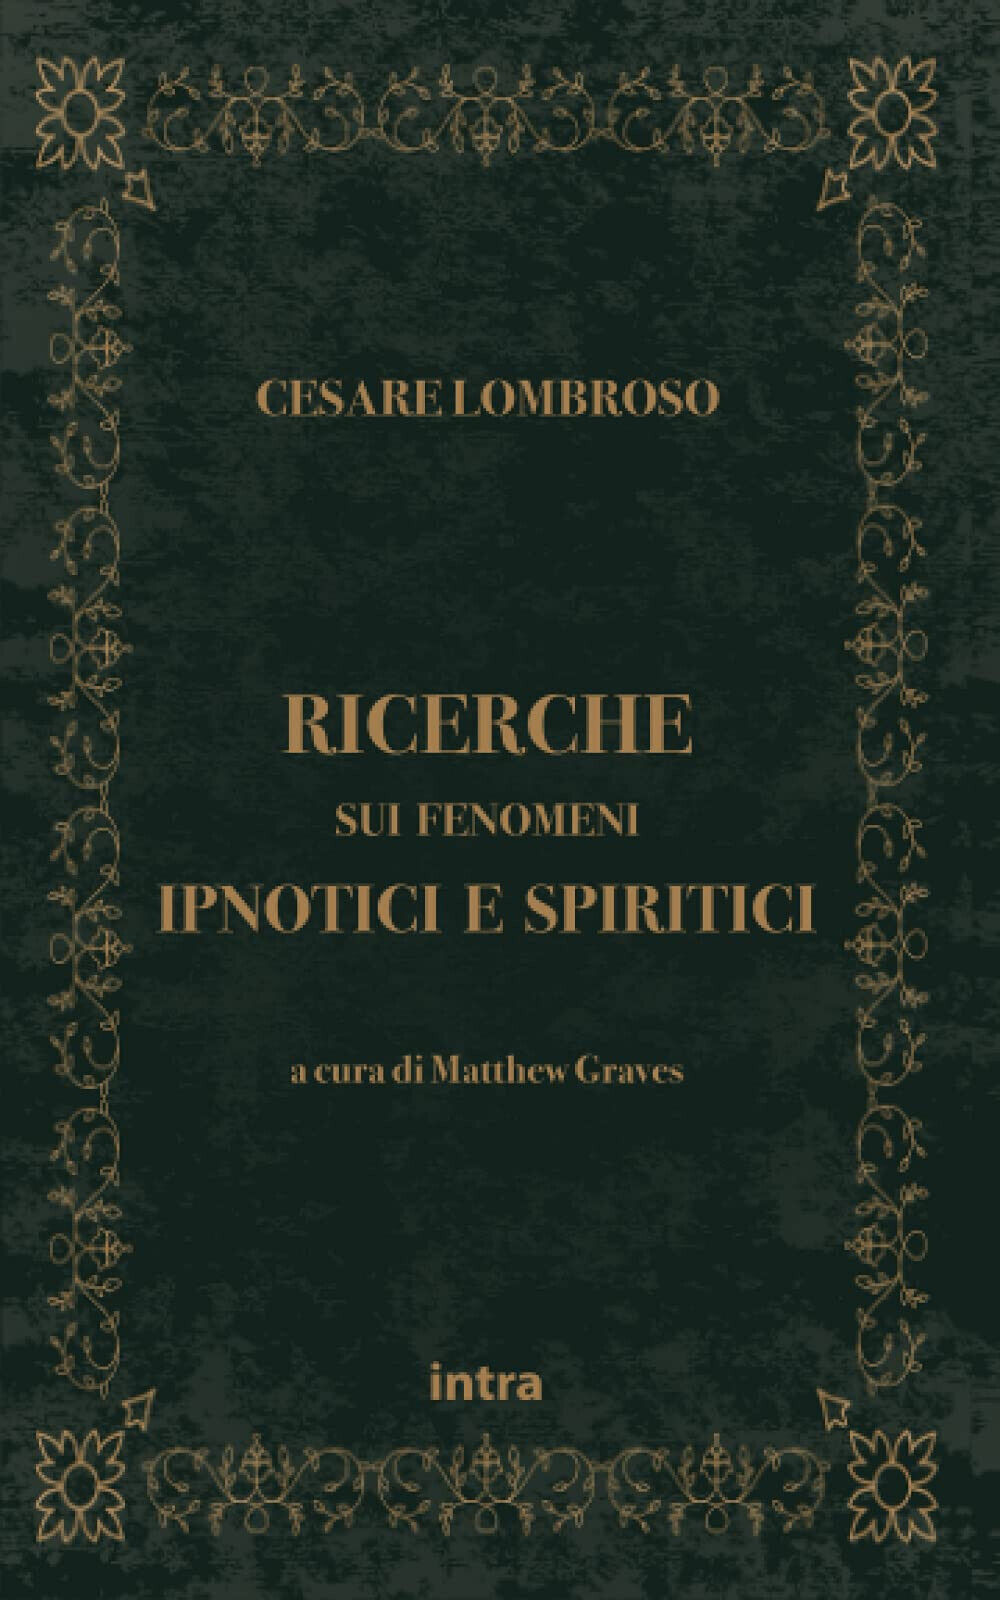 Ricerche sui fenomeni ipnotici e spiritici - Cesare Lombroso - Intra, 2021